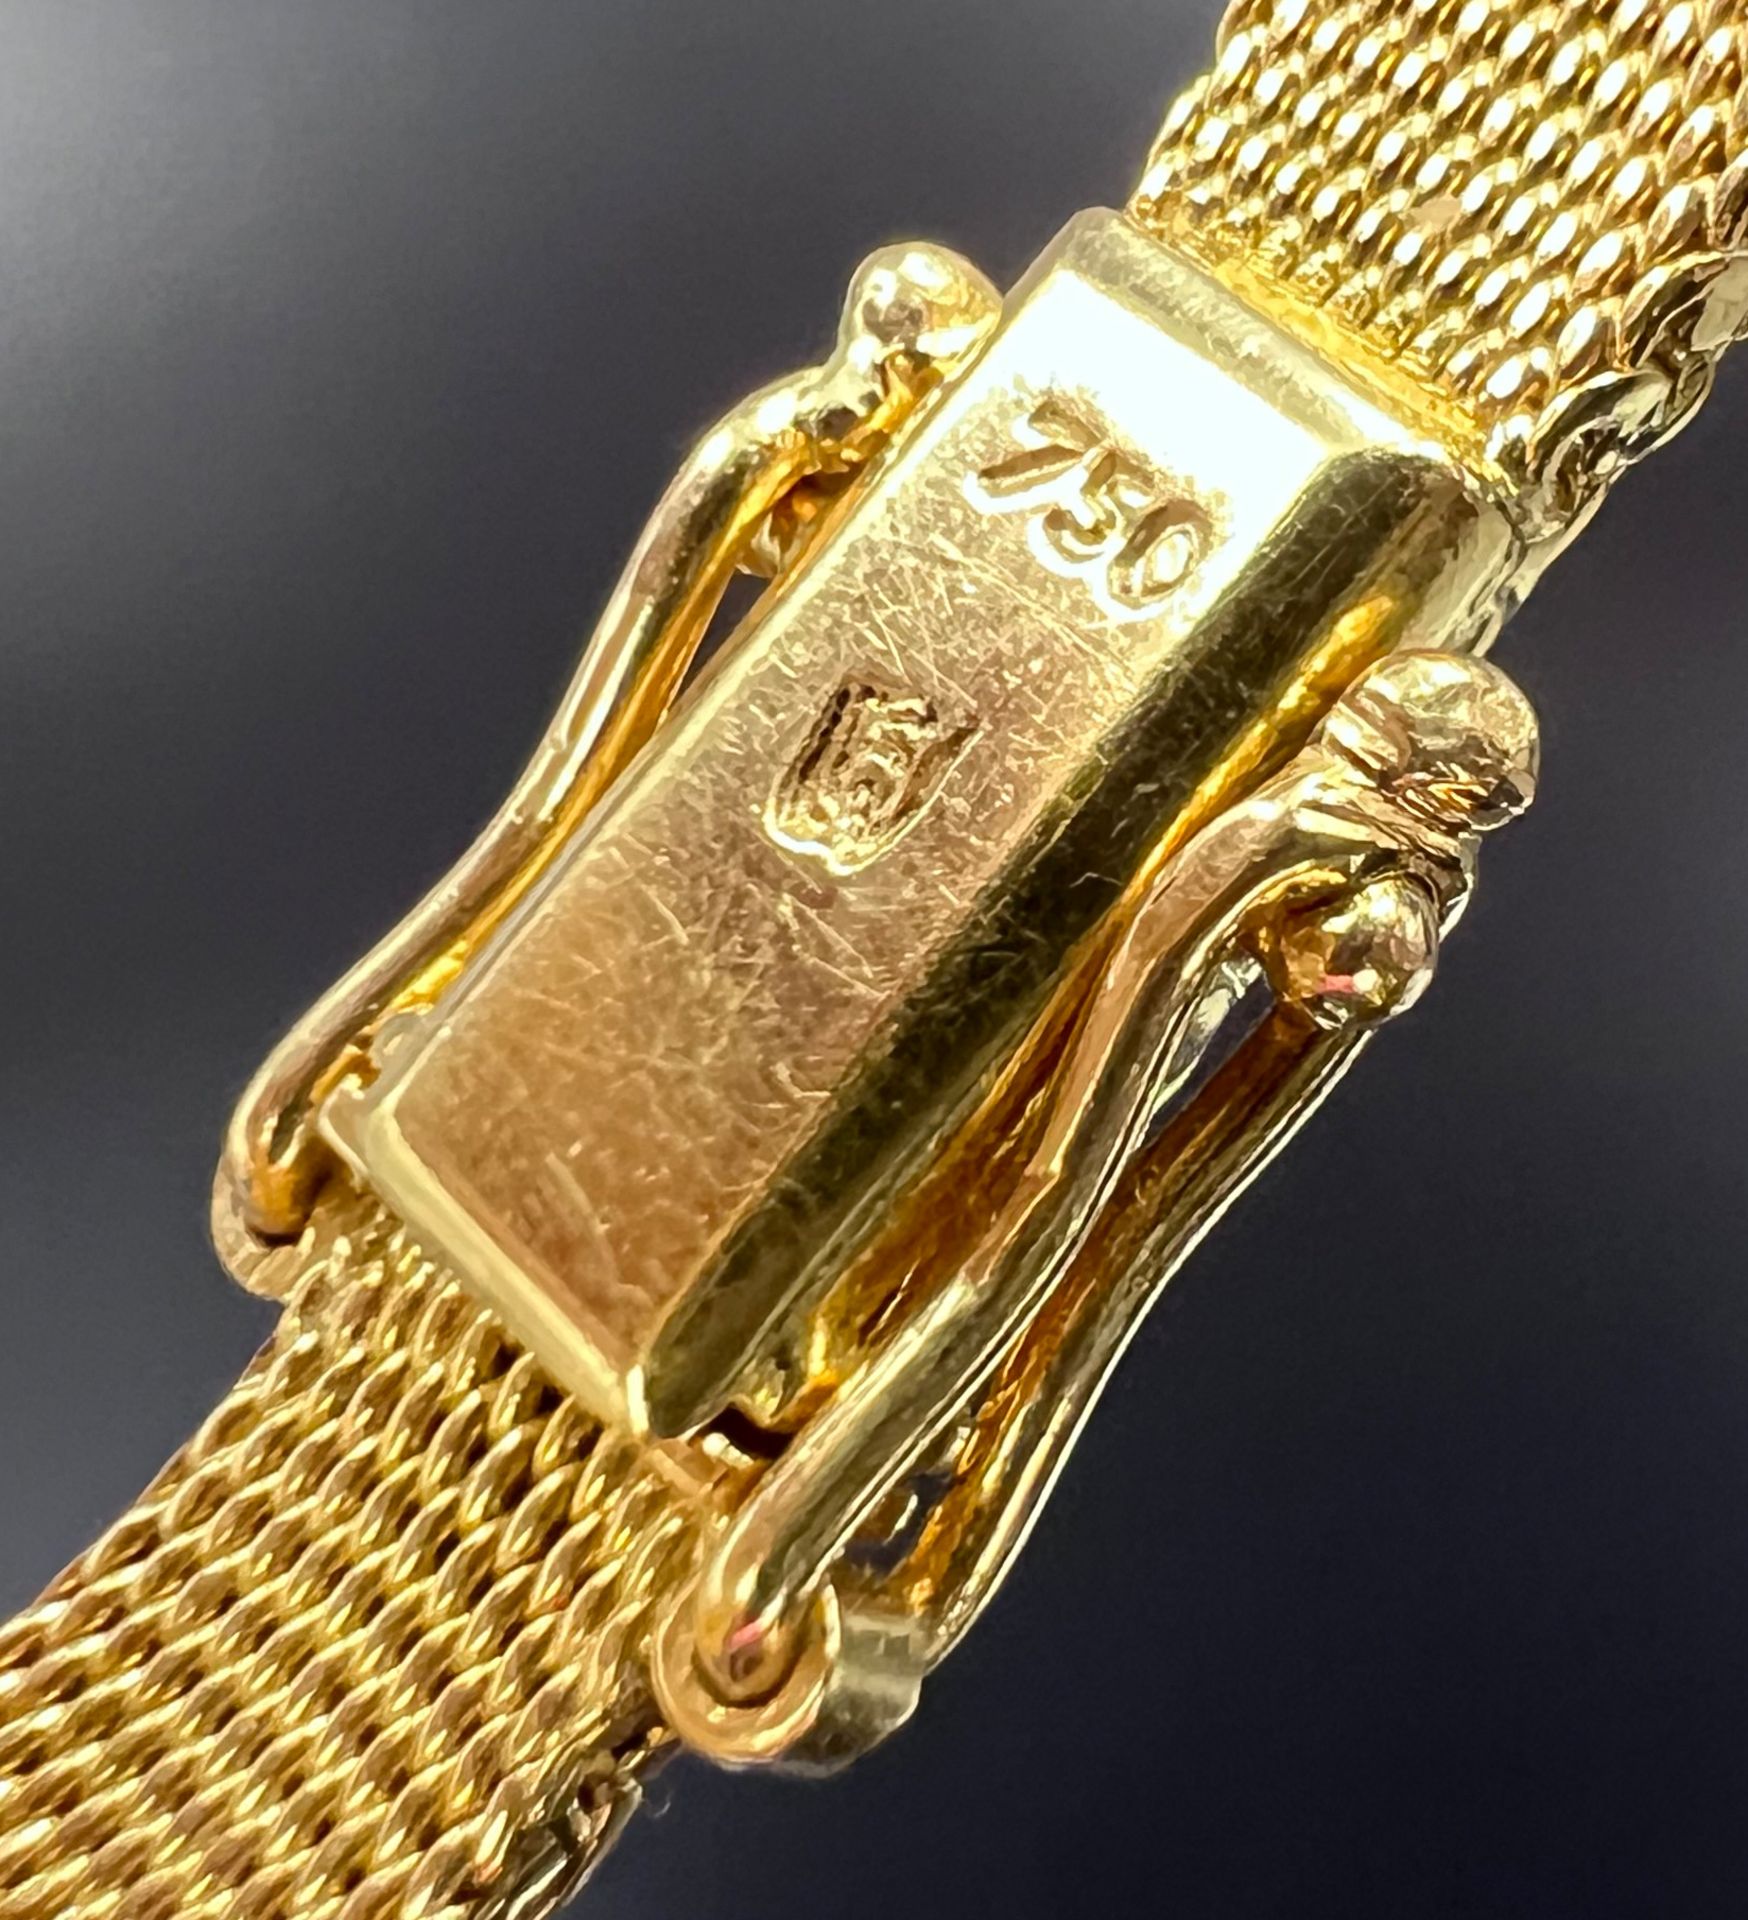 Armband. 750 Gelbgold mit Diamanten, Saphiren und einer Perle. - Bild 4 aus 5